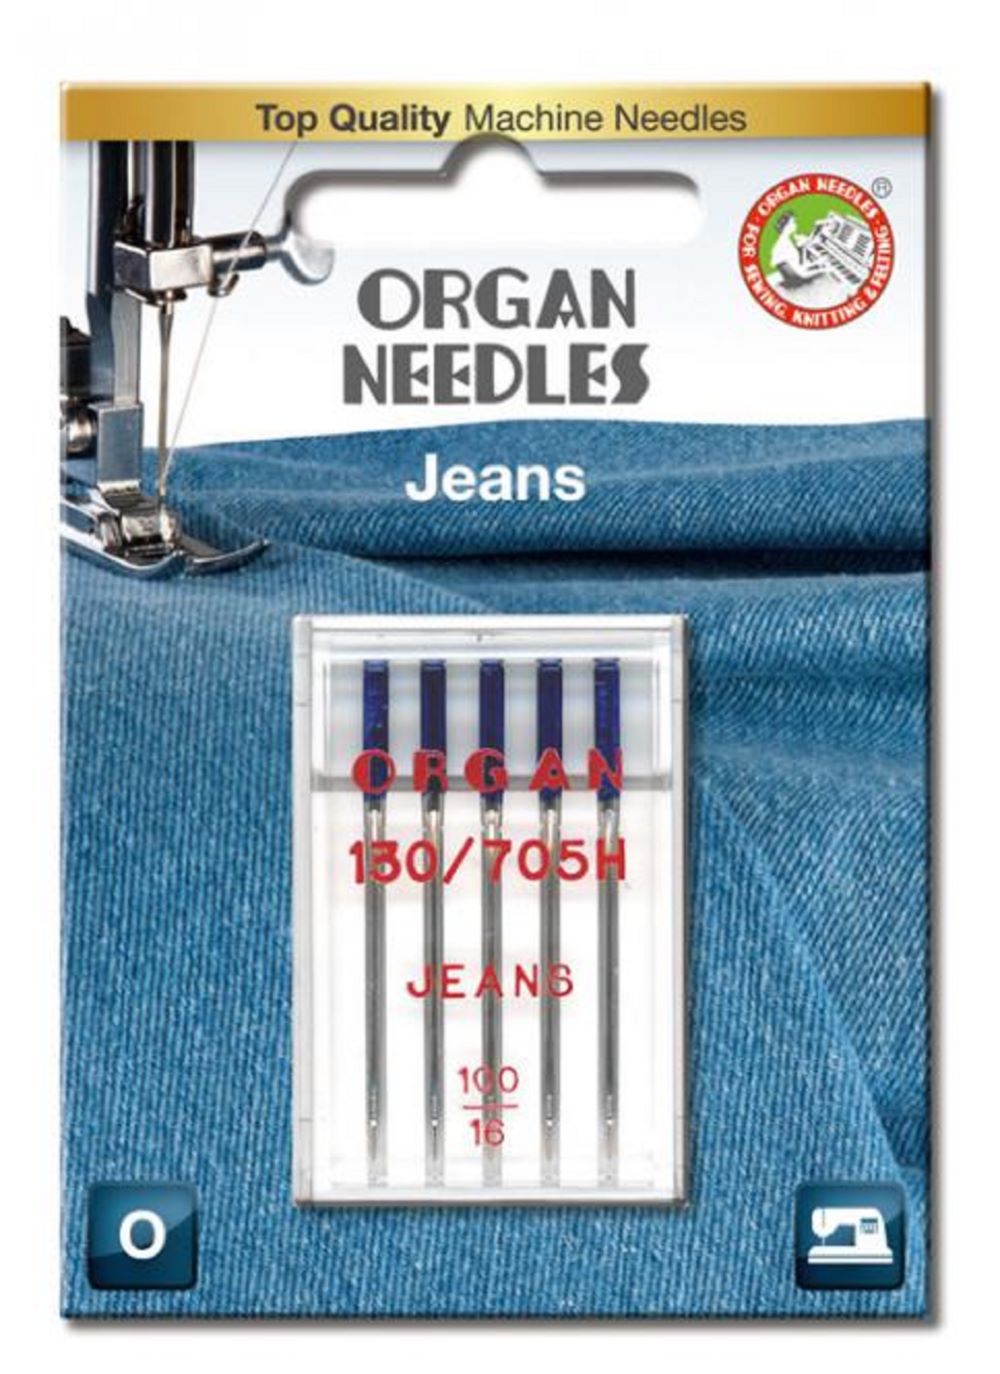 Organ Maschinennadeln 130/705 H Jeans 100 á 5 Blister